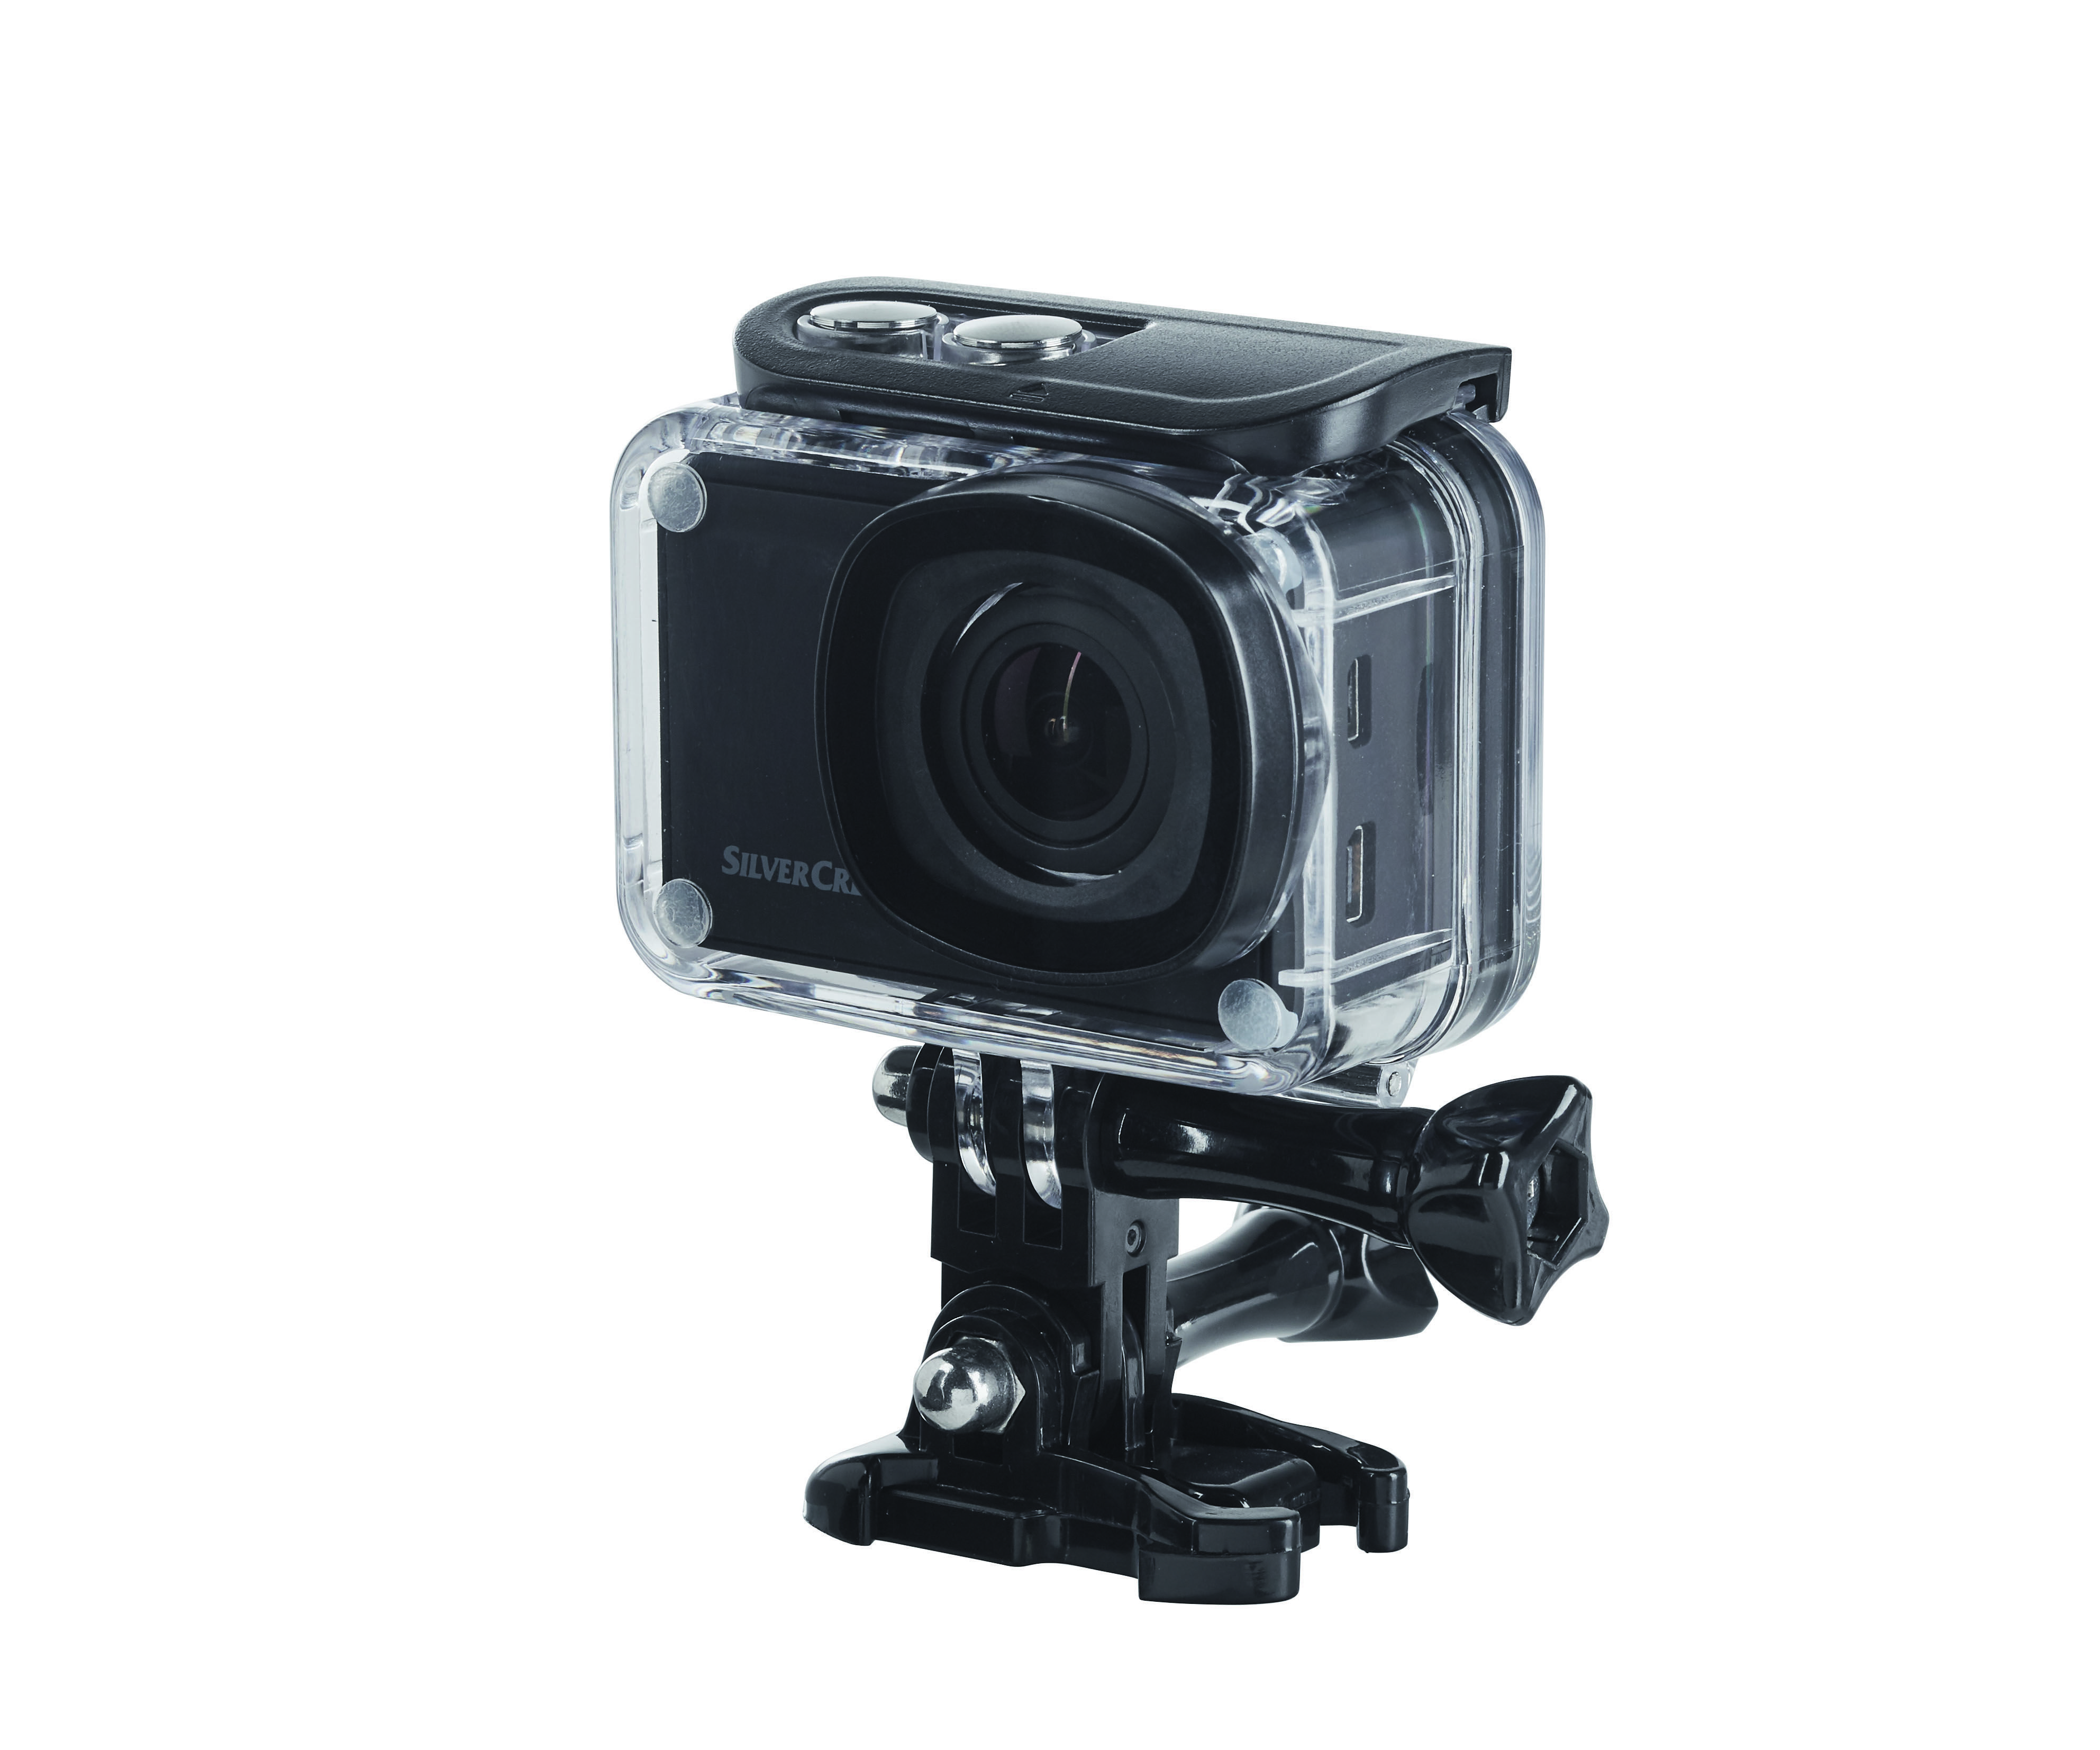 Silvercrest 4k Action Camera 13 Megapixel 4K Videos 160° Wide Angle Lens 